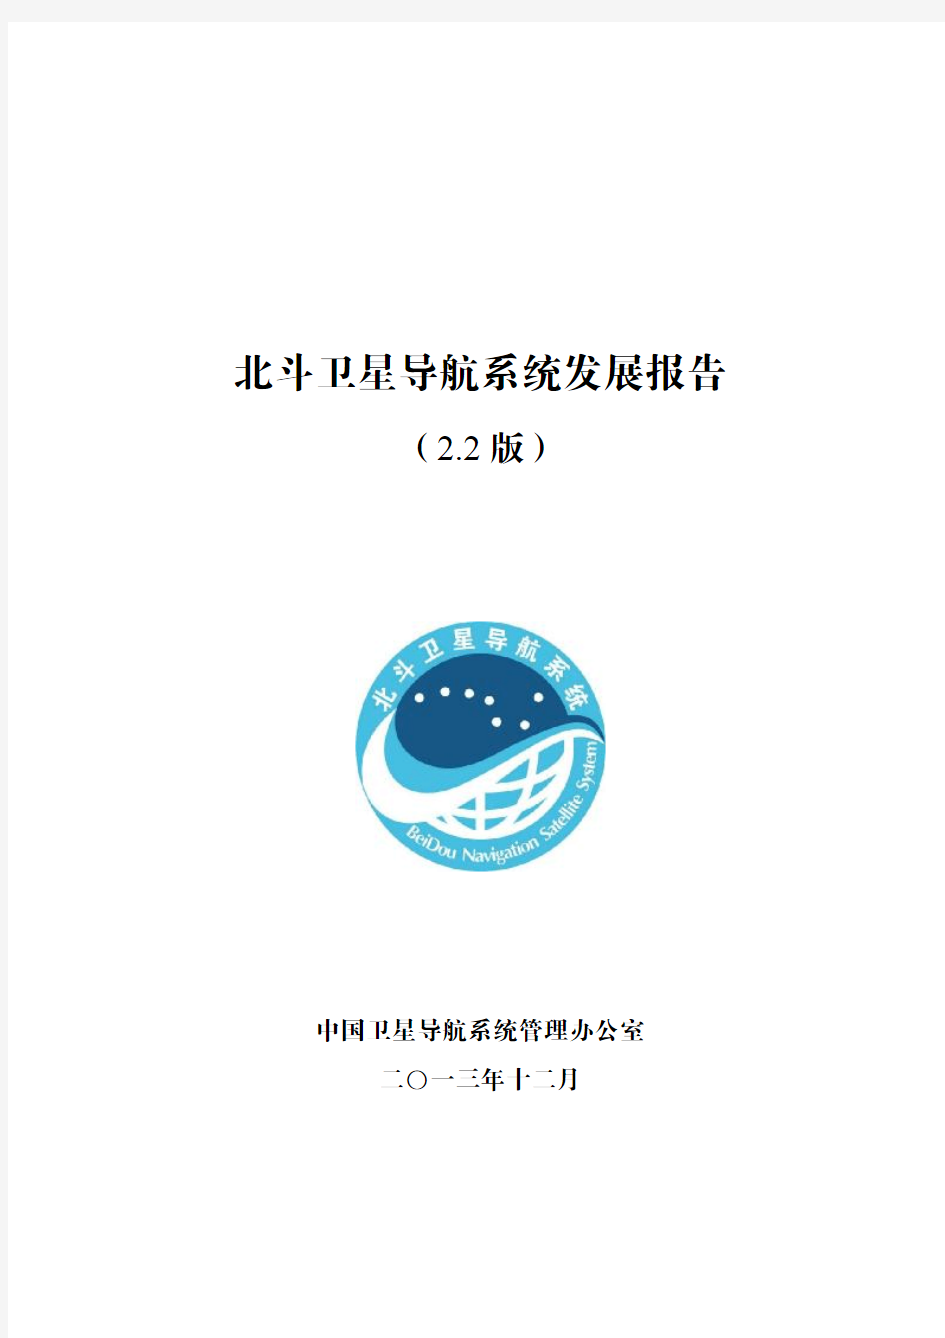 2013 北斗卫星导航系统发展报告(2.2版)